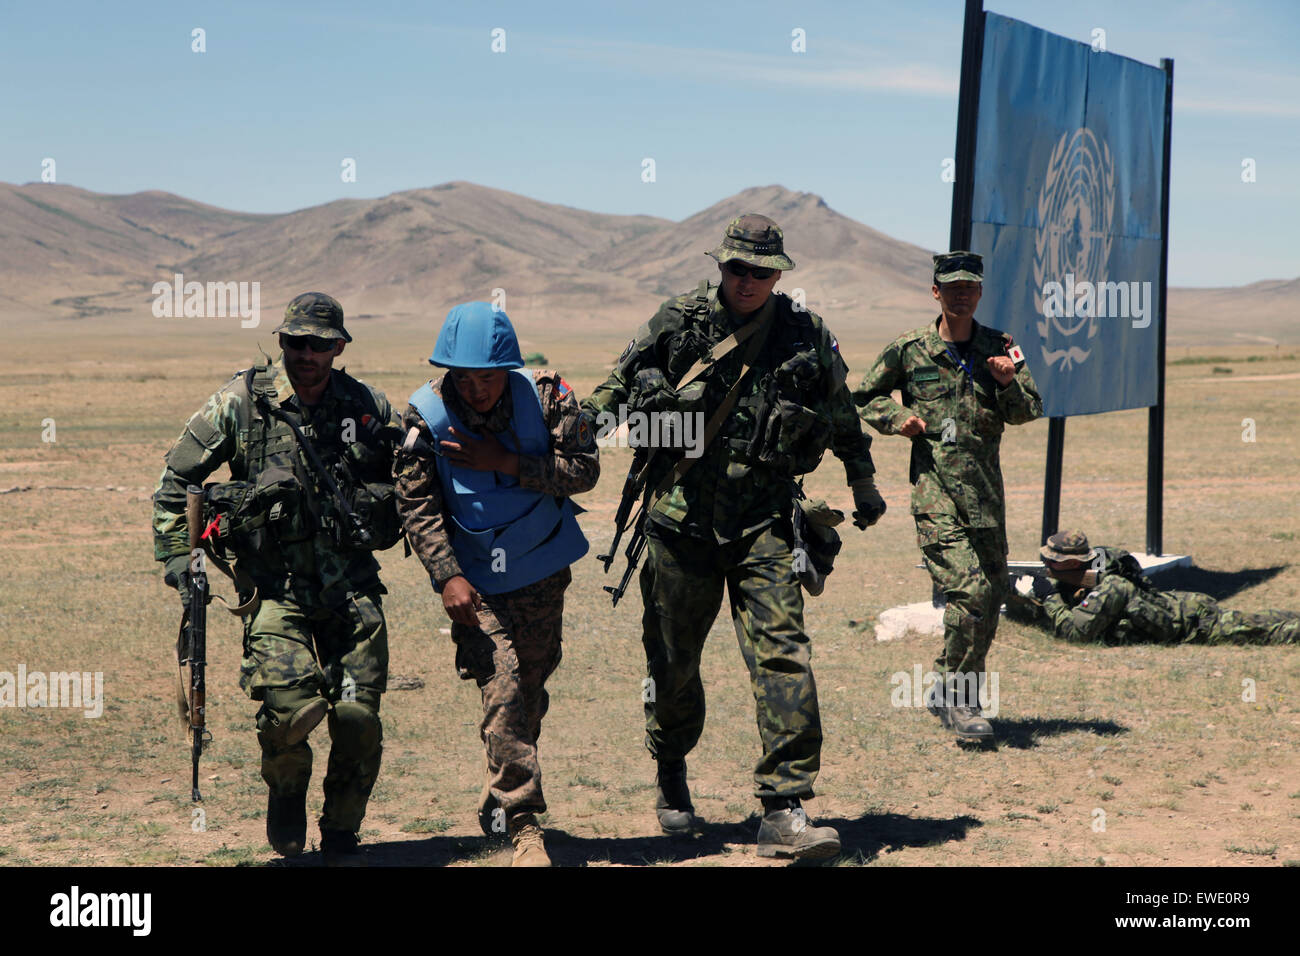 Ulan Bator, Mongolia. Il 24 giugno 2015. Soldati frequentare l'esercizio Khaan Ricerca in una base militare vicino a Ulan Bator, Mongolia, Giugno 24, 2015. Più di 1.200 militari provenienti da 23 nazioni, compresa la Mongolia, gli Stati Uniti, Cina, Francia, Giappone e altri hanno partecipato in esercizi di formazione incentrati sulle operazioni di mantenimento della pace. Questo anno le esercitazioni hanno avuto inizio il 20 giugno e durerà fino al 1 luglio. © Zheng Chuang/Xinhua/Alamy Live News Foto Stock